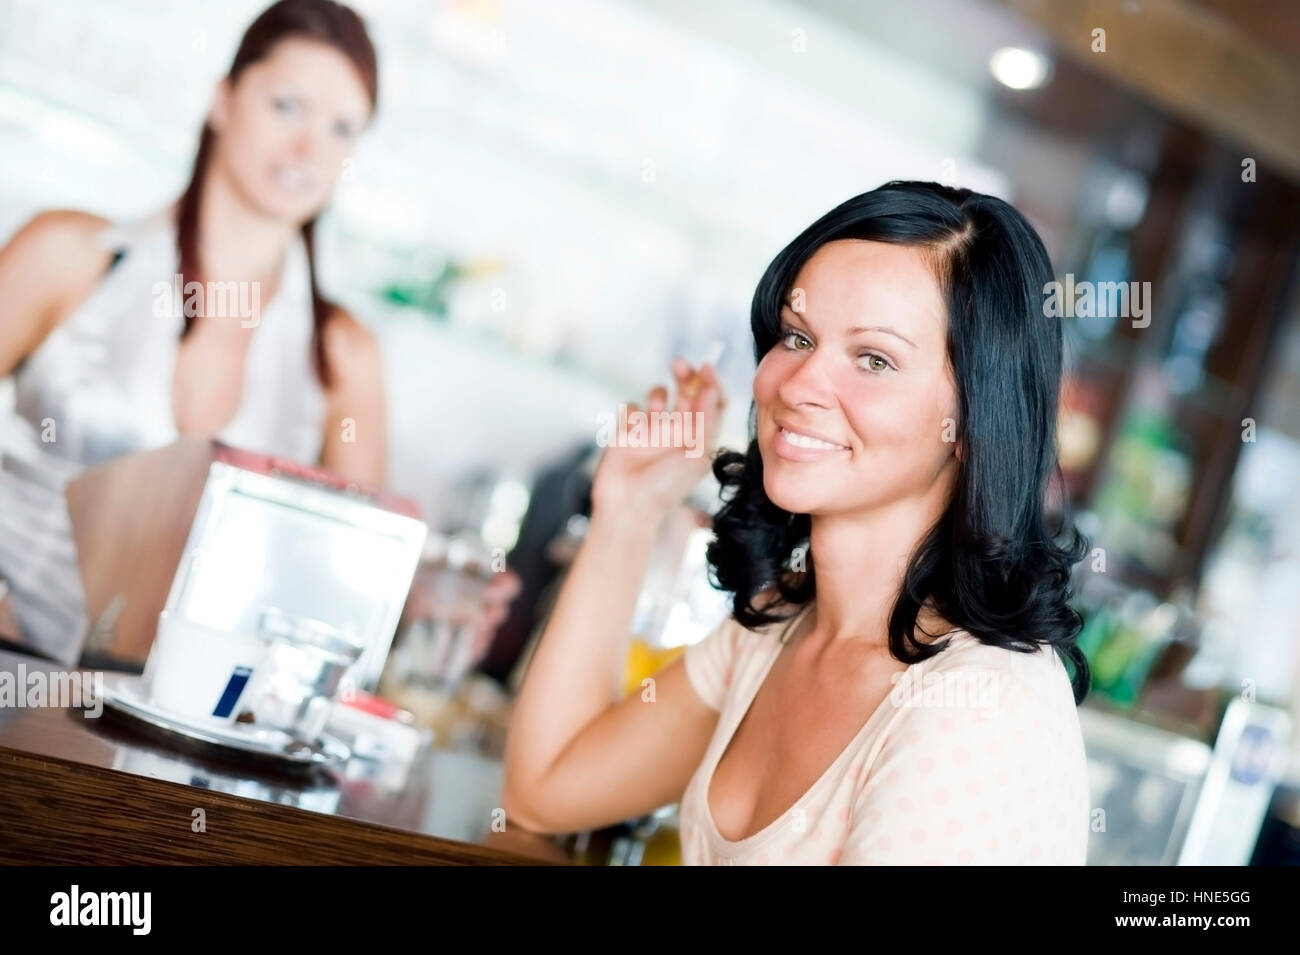 Model-release, Junge Frau Sitzt eine der Theke Im Kaffeehaus Und Raucht - junge Frau Rauchen in der cafeteria Stockfoto